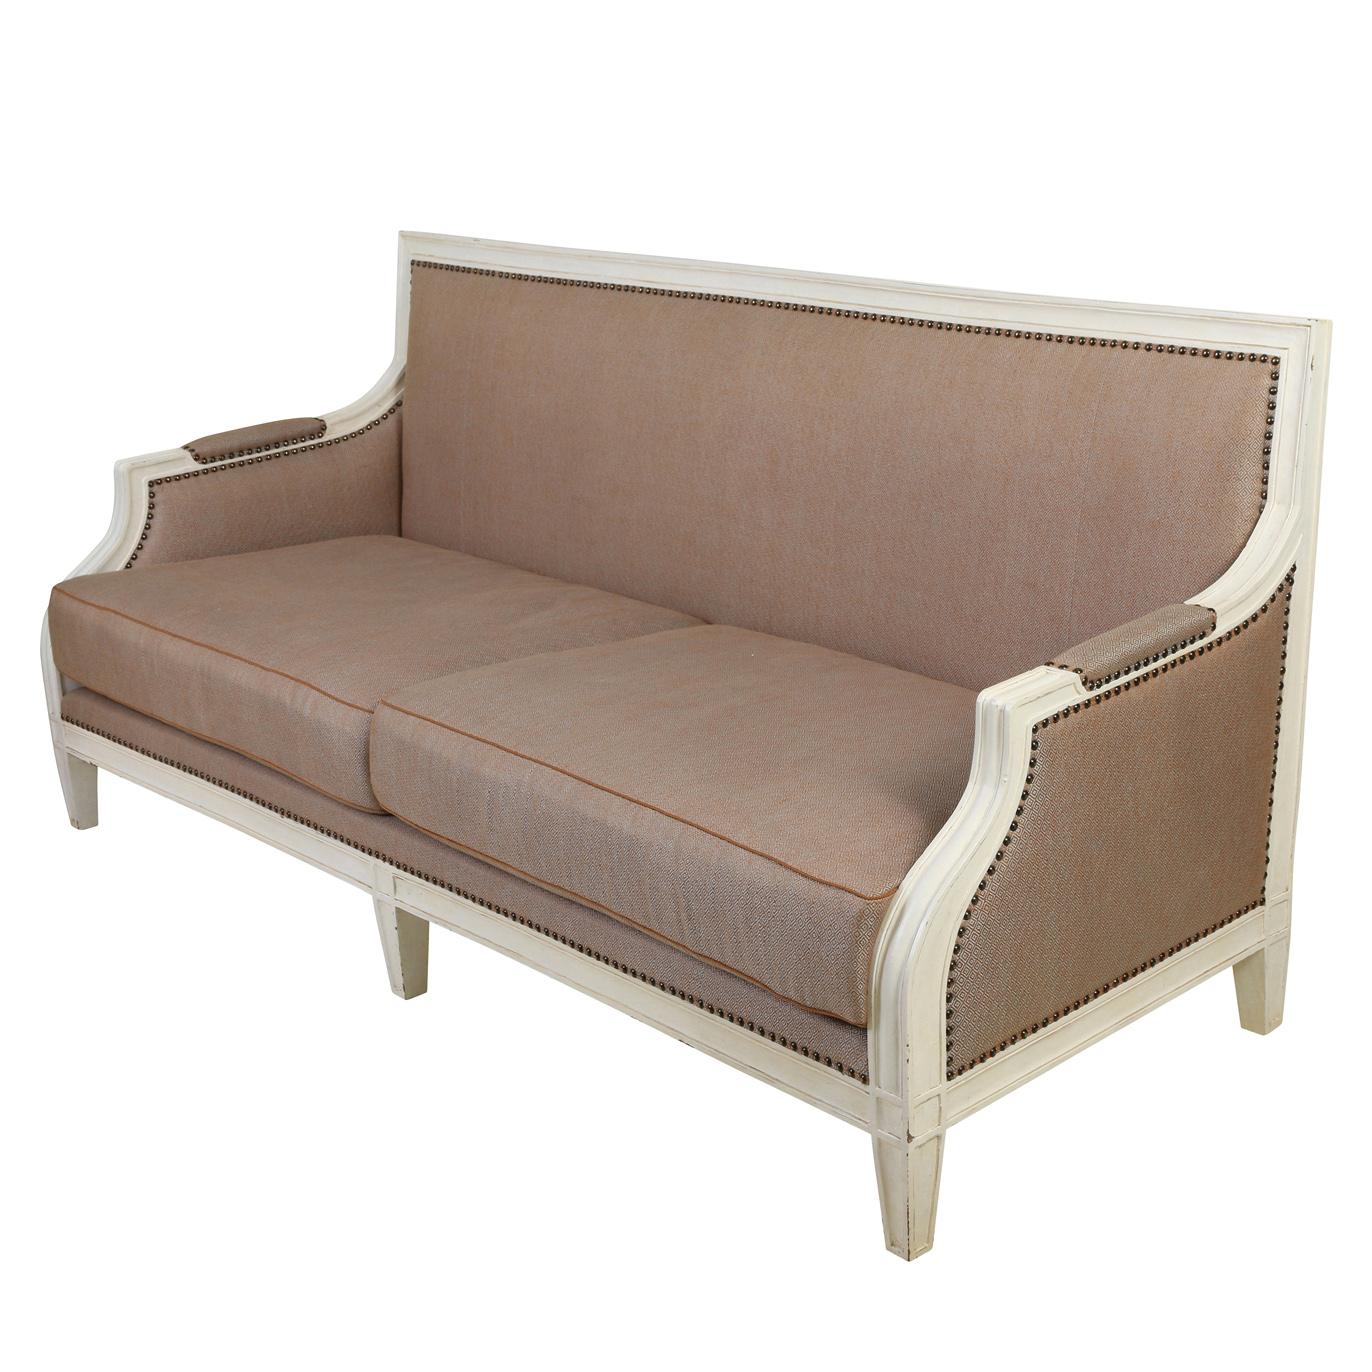 Ein altes französisches Sofa mit weißem Rahmen und dunkelbeigem Stoffbezug, fester Rückenlehne, zwei Sitzkissen, gepolsterten Armlehnen, Nagelkopfverzierungen und gerader Rückenlehne und Beinen.